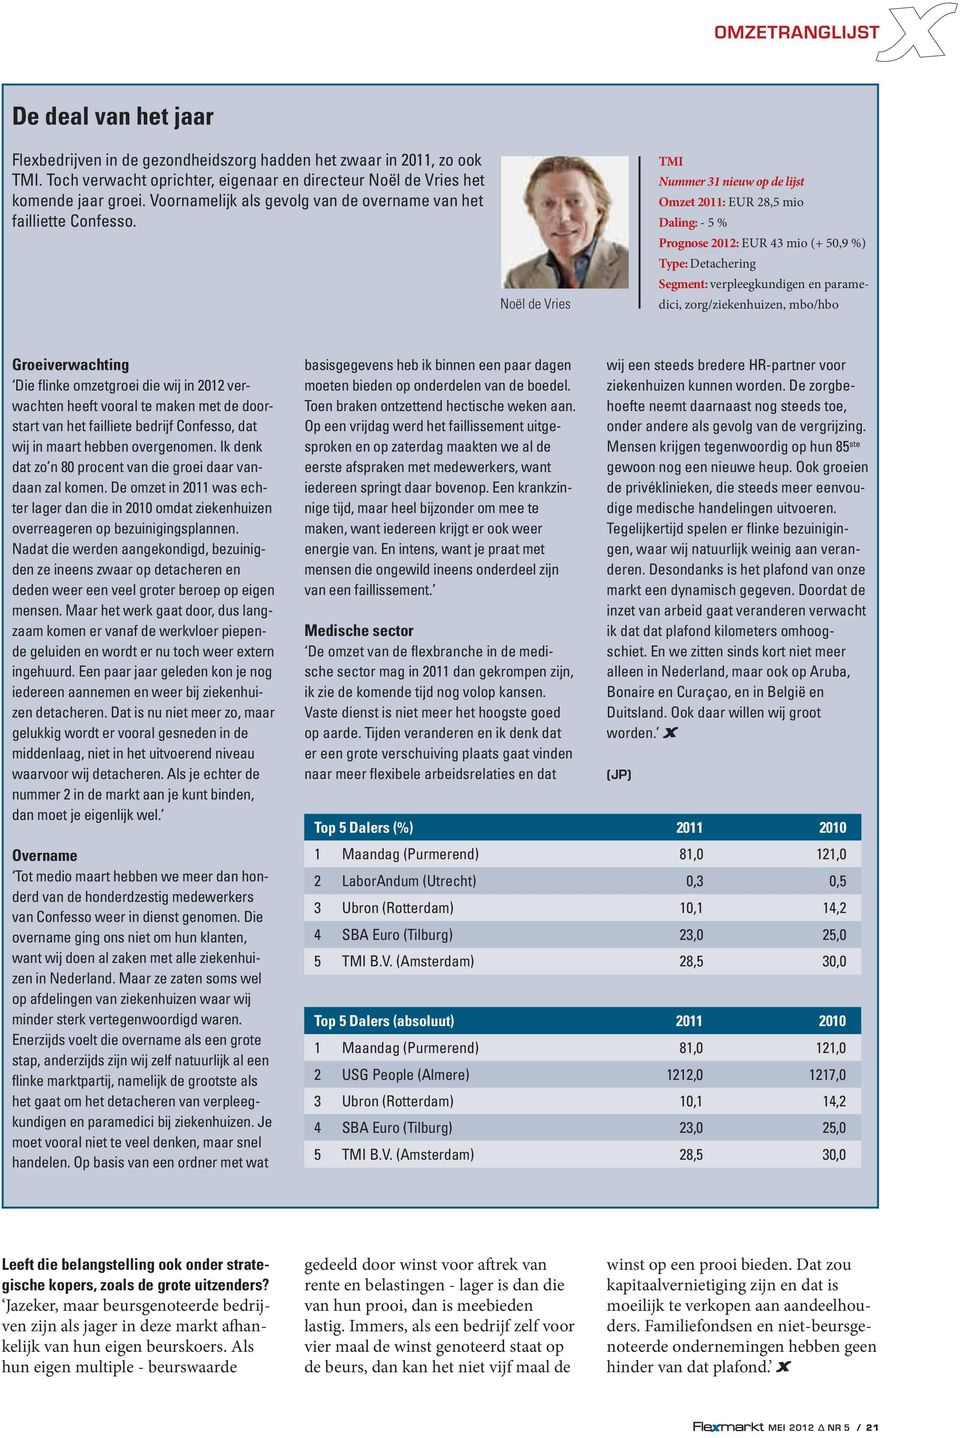 Noël de Vries TMI Nummer 31 nieuw op de lijst Omzet 2011: EUR 28,5 mio Daling: - 5 % Prognose 2012: EUR 43 mio (+ 50,9 %) Type: Detachering Segment: verpleegkundigen en paramedici, zorg/ziekenhuizen,